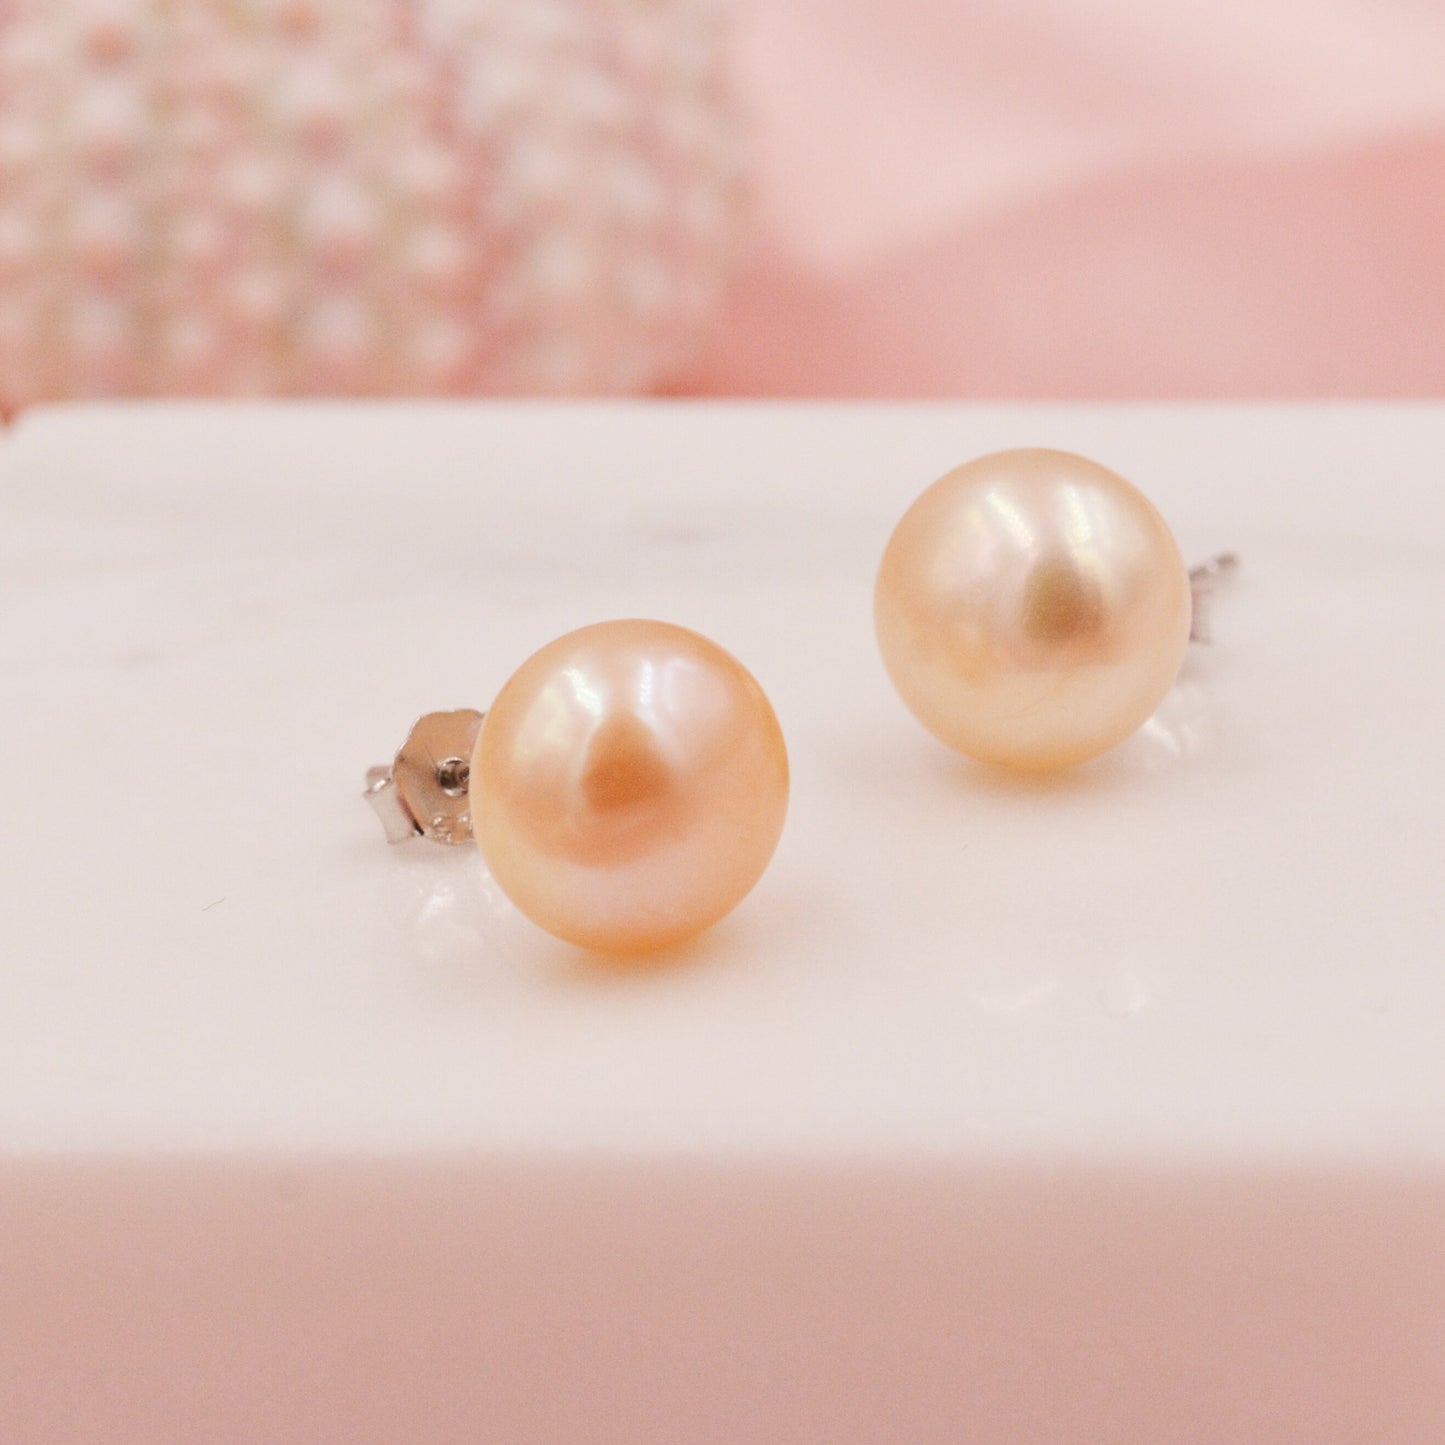 Genuine Pink Pearl Stud Earrings in Sterling Silver, 5mm - 8mm, Small Pearl Stud and Large Pearl Stud, Silver pearl Earrings,